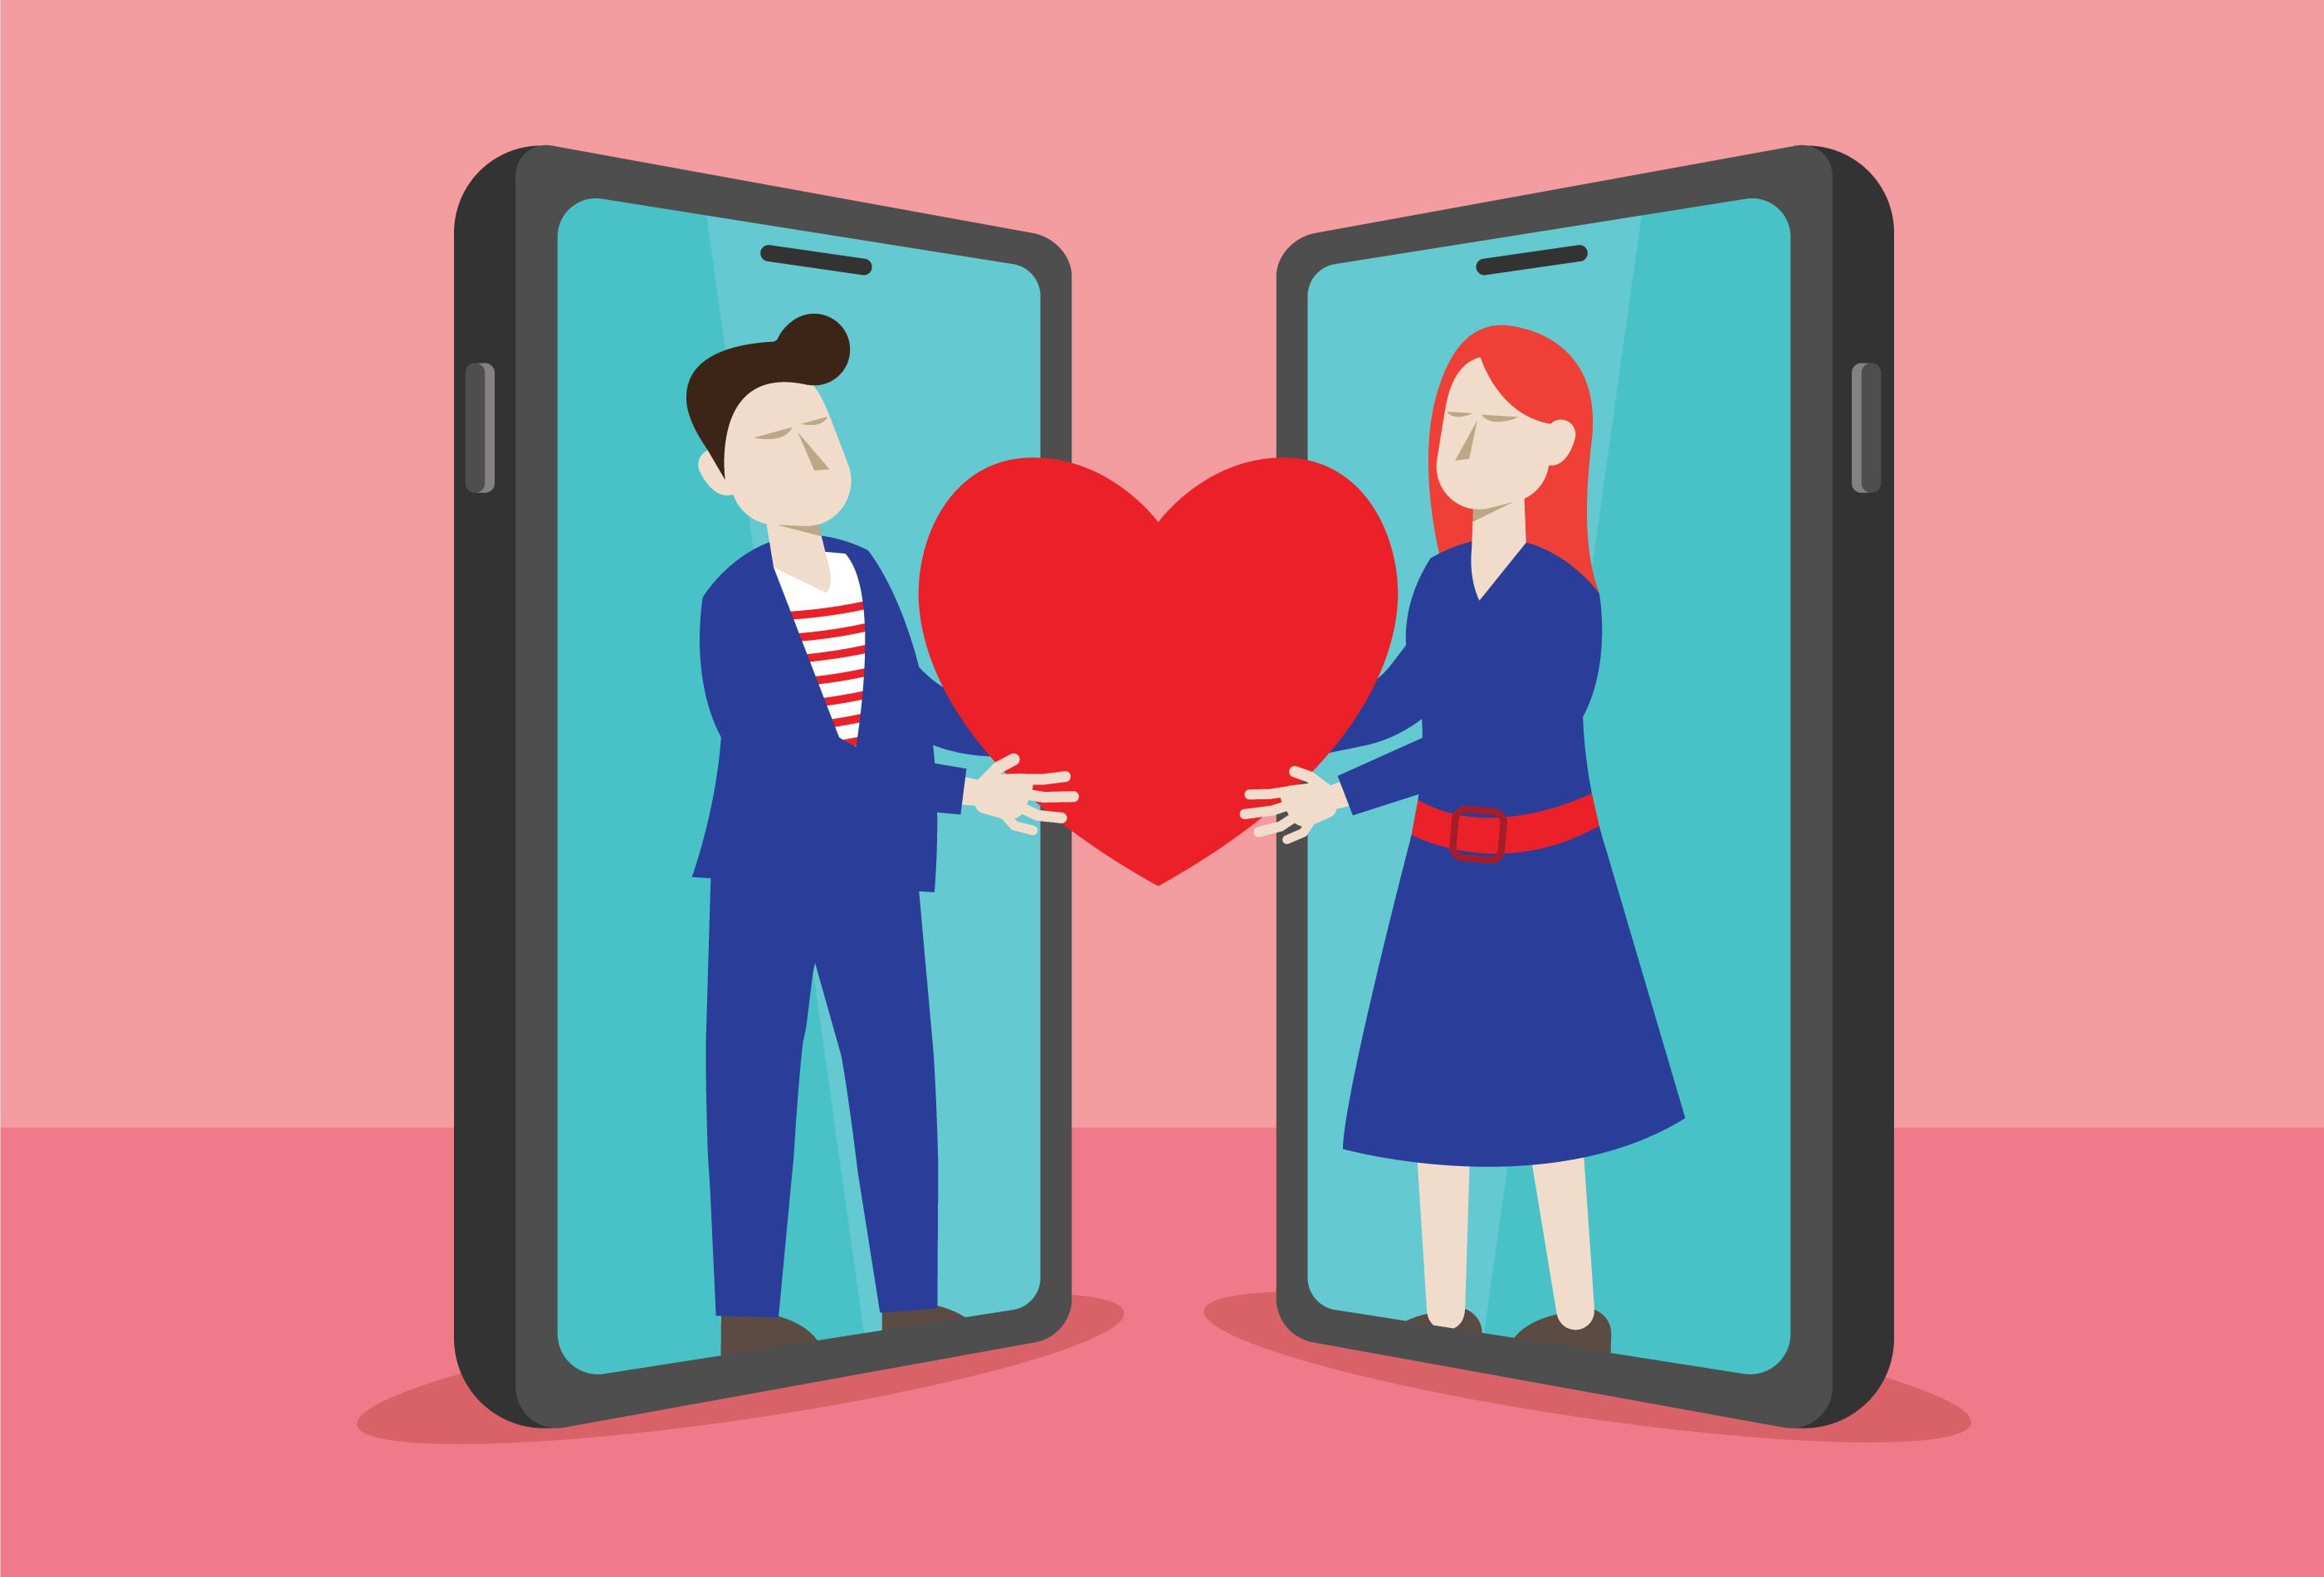 Muitos aplicativos de encontros nos pedem para colocar certos parâmetros para encontrar nosso par ideal, algo que poderia te limitar a conhecer alguém totalmente diferente. 